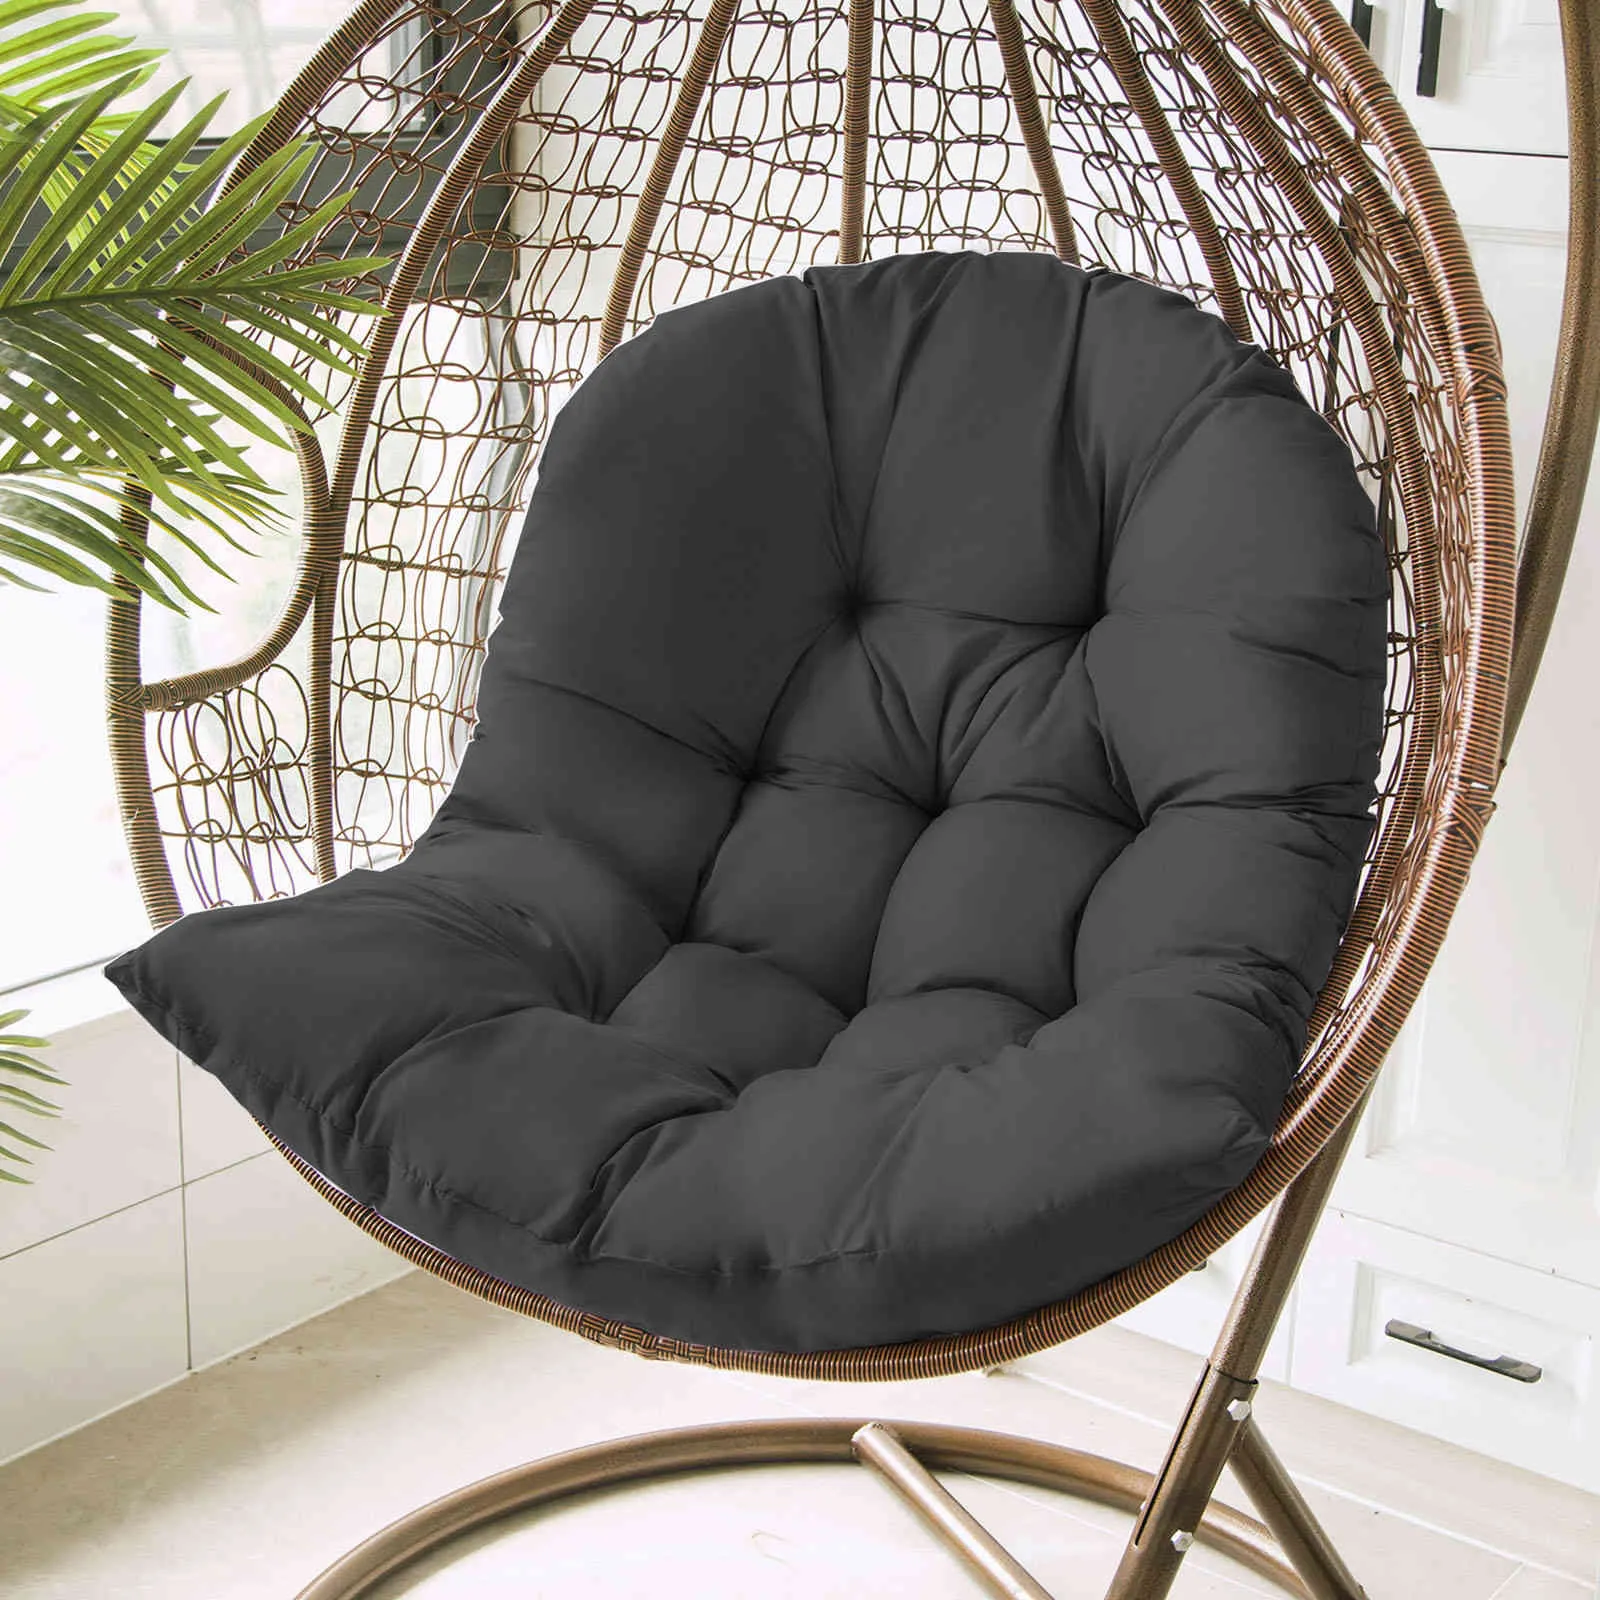 Eierstoel Hangmat Garden Swing Cushion Hangstoel met rugrt Decoratief kussen5775425